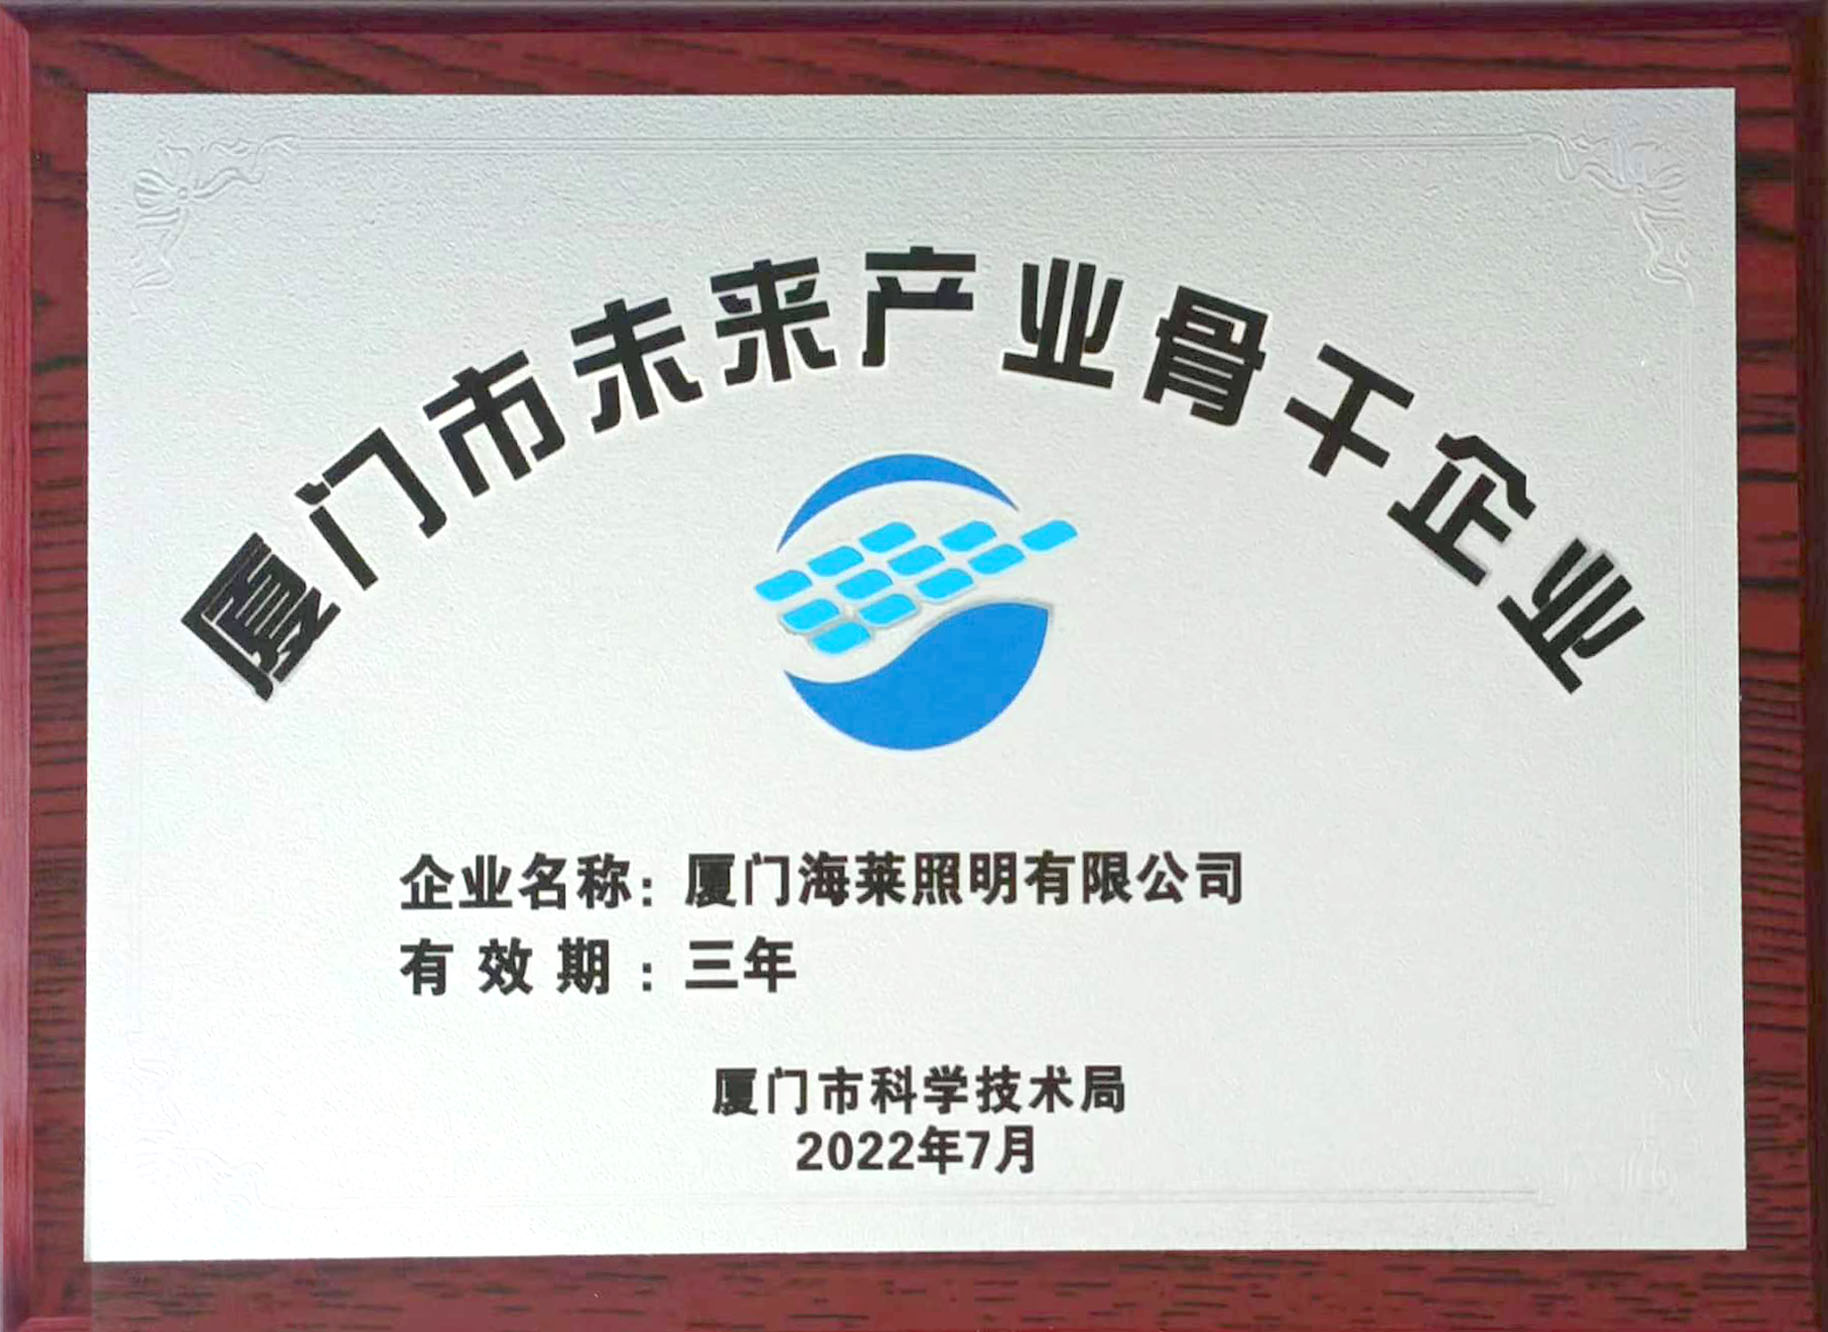 Xiamen Future Industrial Key Enterprise